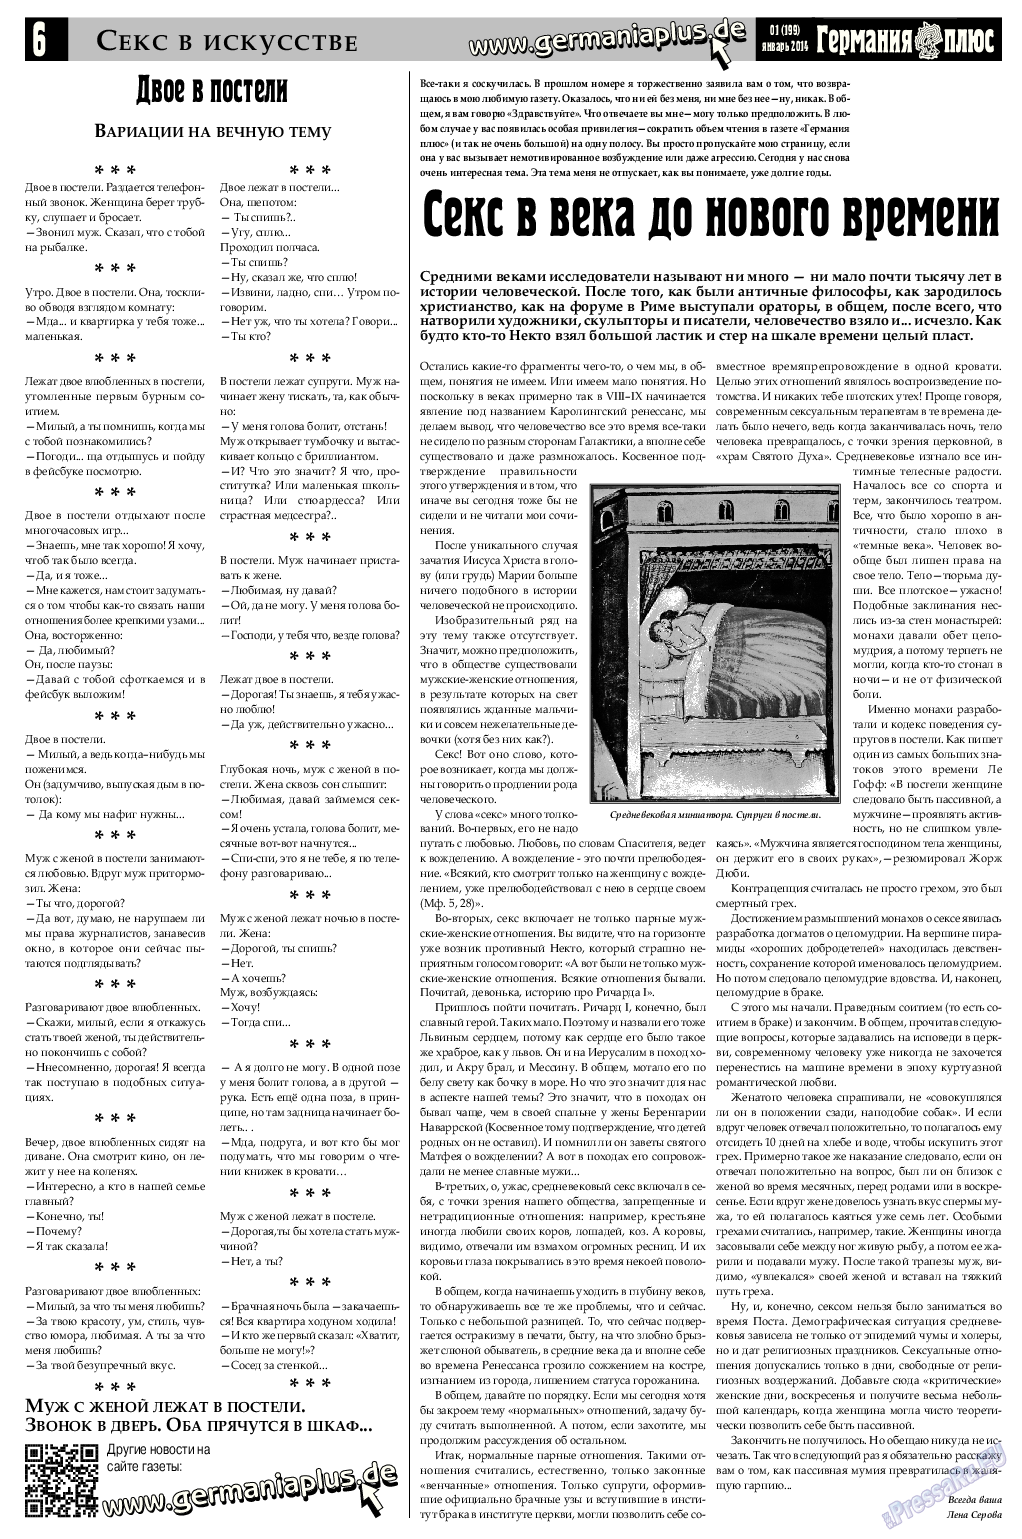 Германия плюс, газета. 2015 №1 стр.6